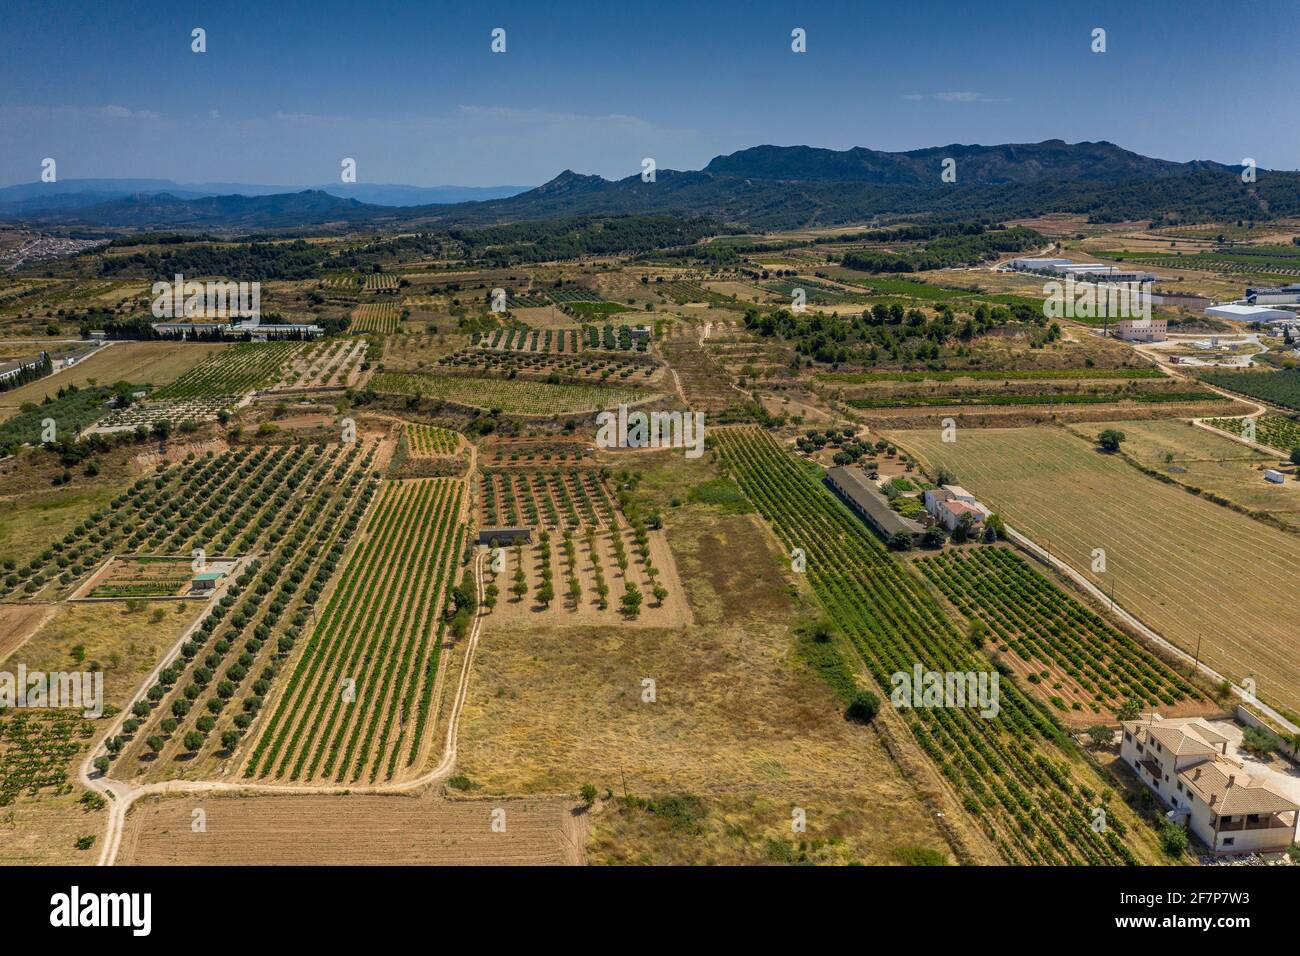 Aerial views of the town of Gandesa and its surroundings (Tarragona province, Catalonia, Spain) ESP: Vistas aéreas de Gandesa y sus alrededore Stock Photo